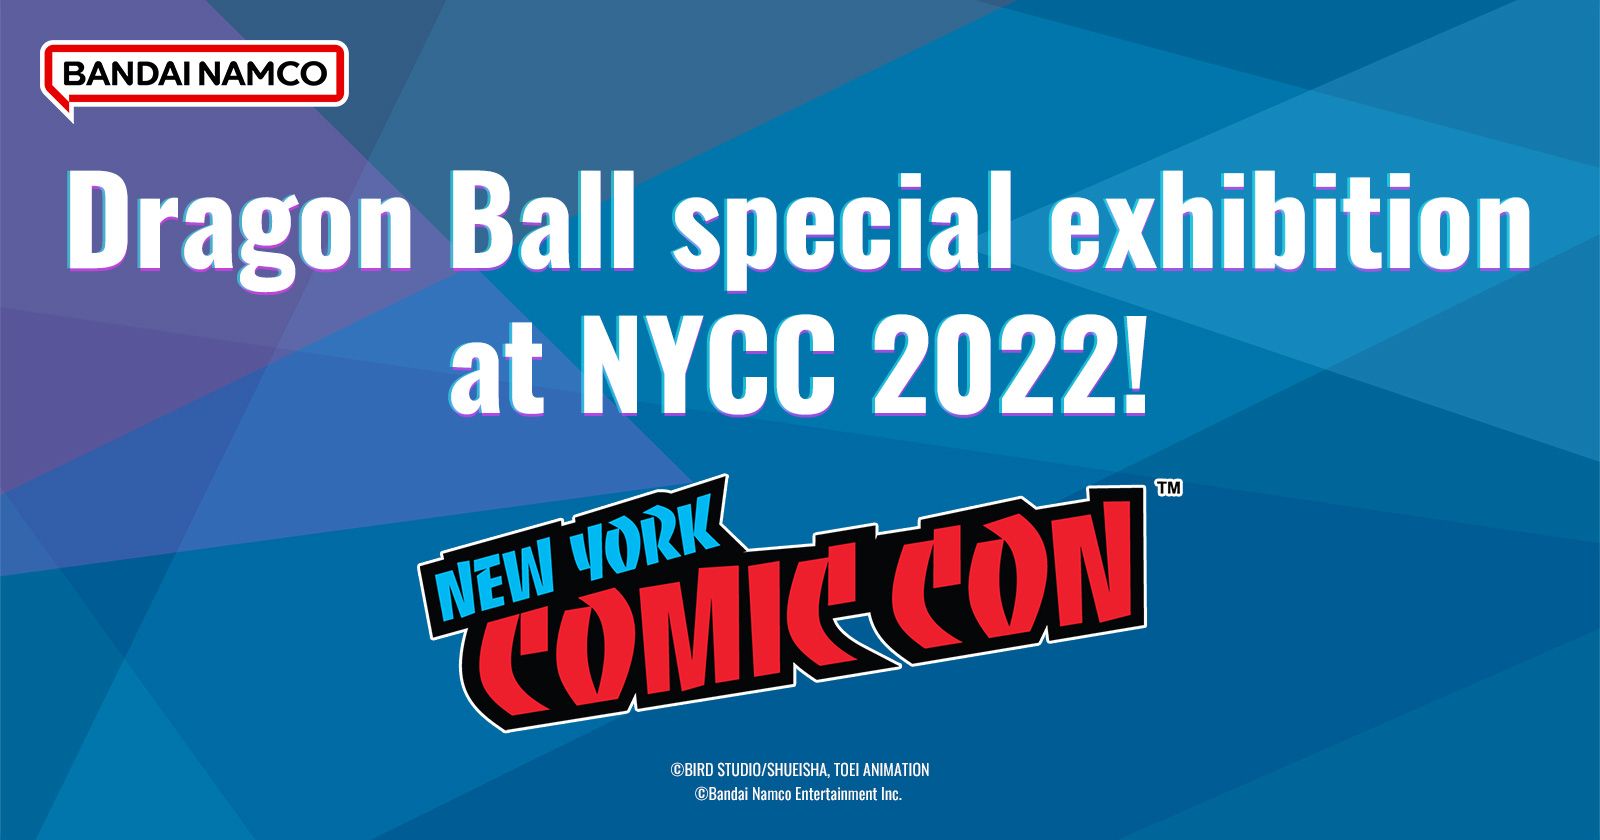 Bandai Namco Dragon Ball special exhibition at NYCC 2022!